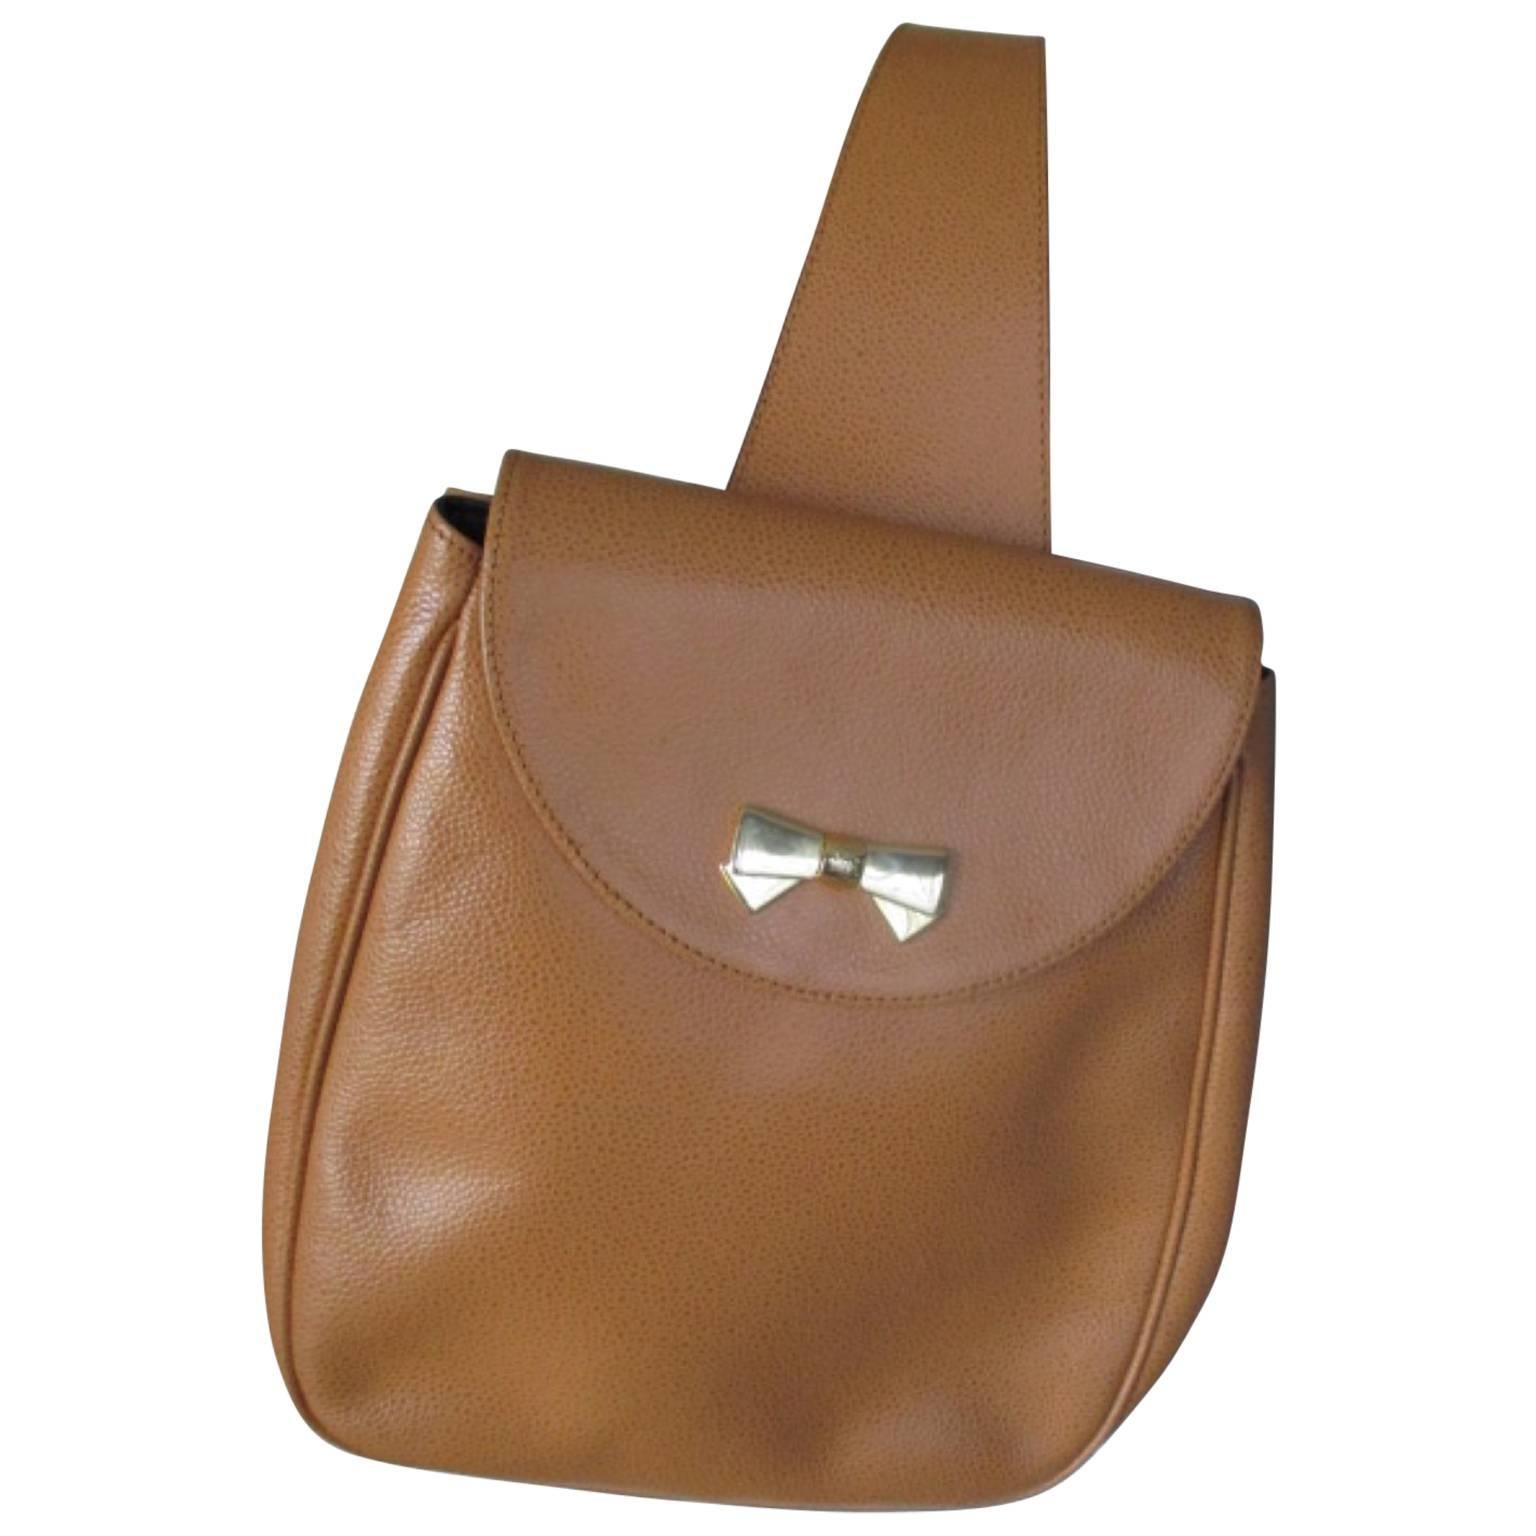 Nina Ricci leather bag